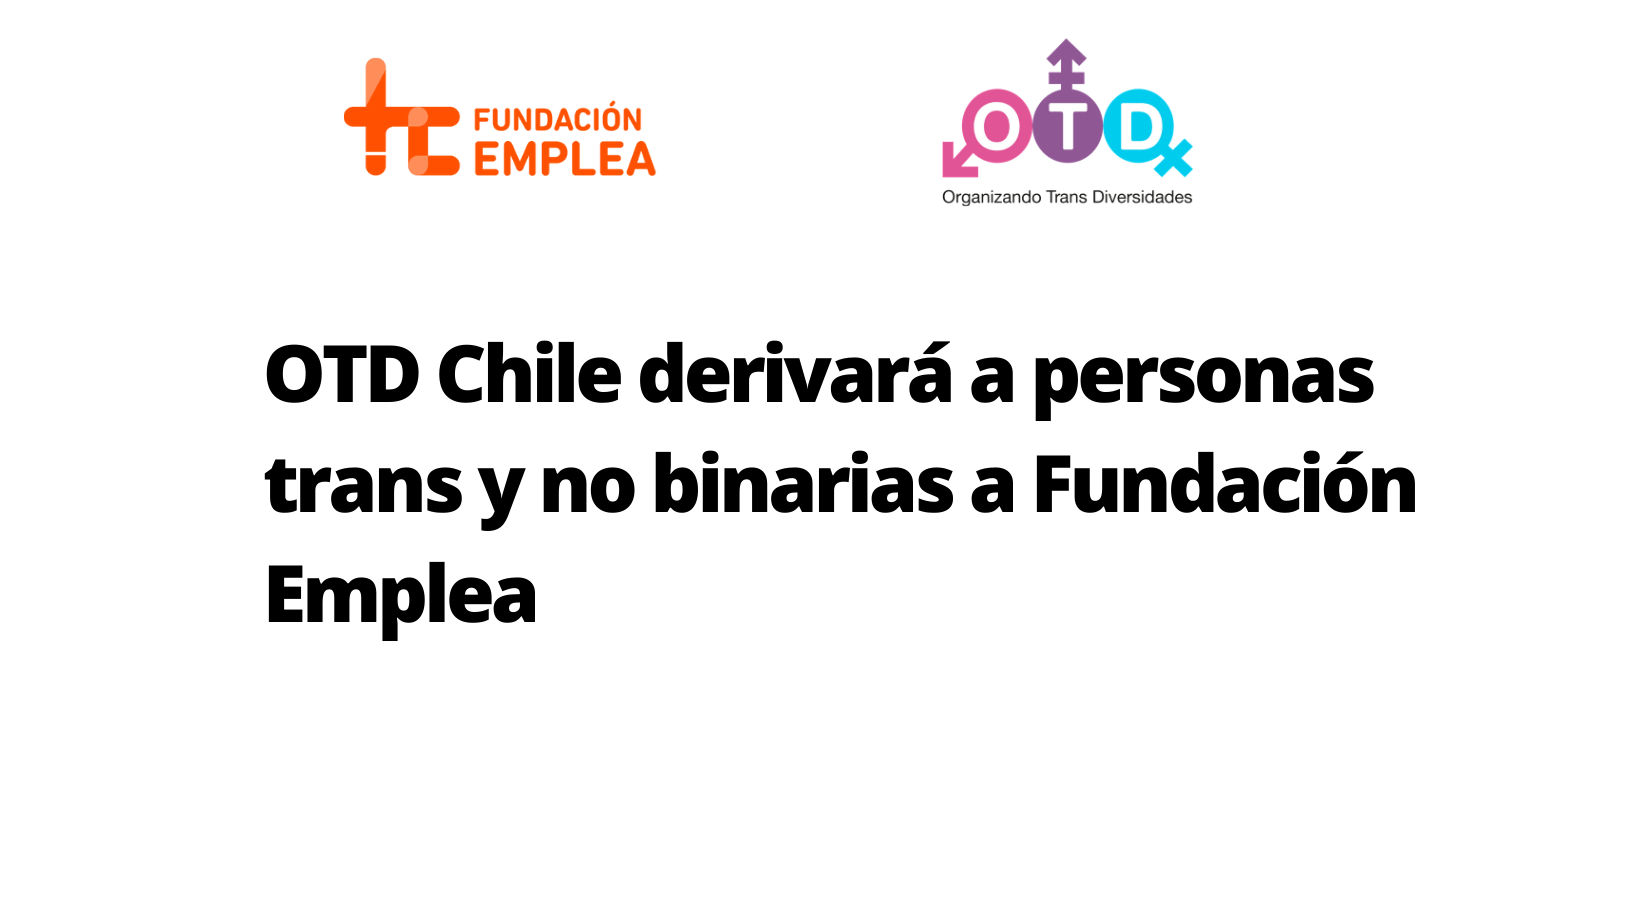 OTD Chile derivará a personas trans y no binarias a Fundación Emplea